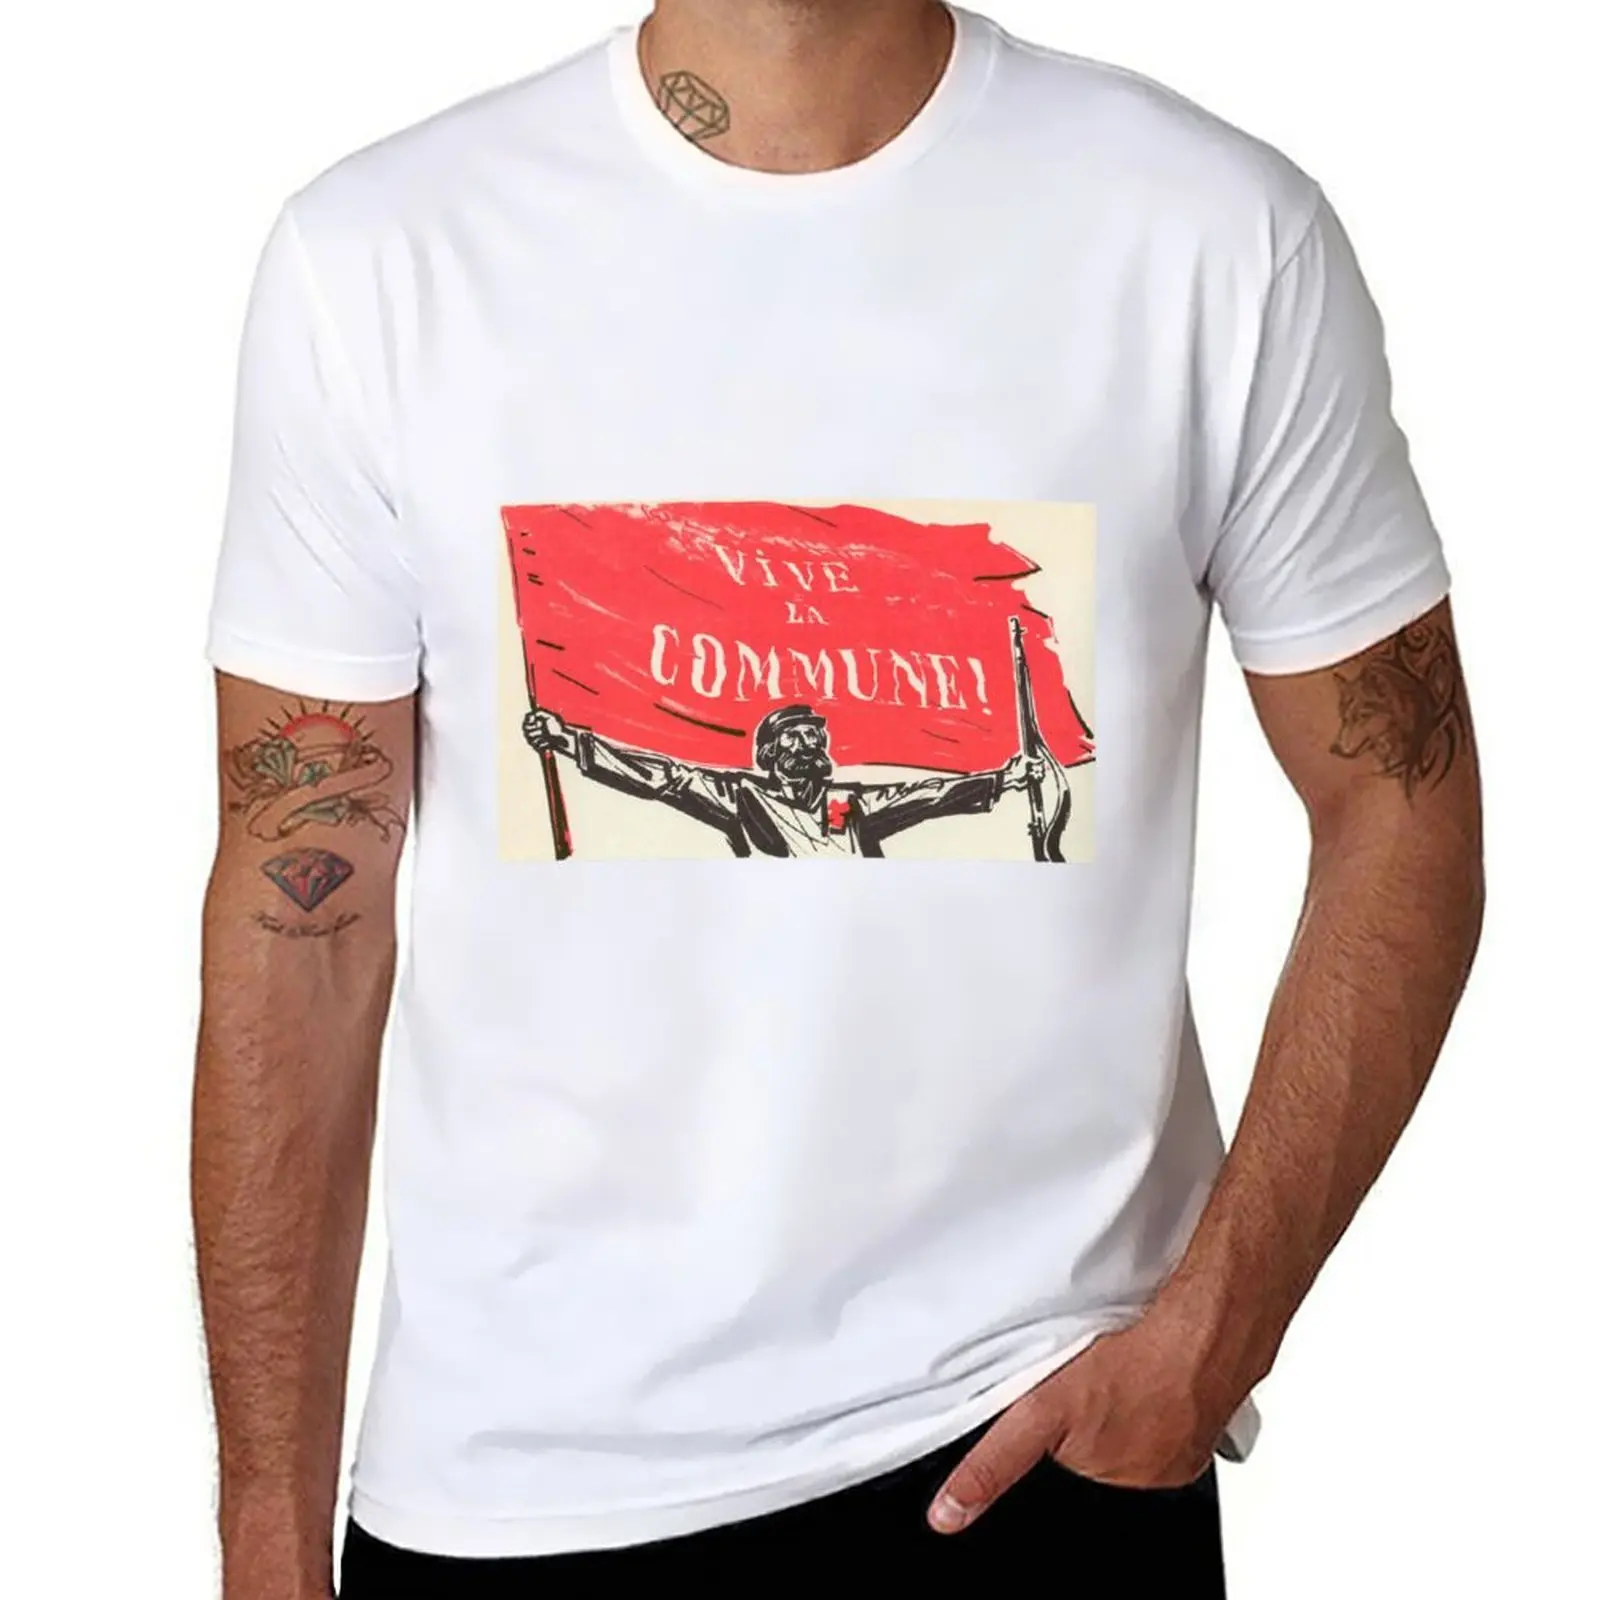 

New Paris Commune Poster - Vive Le Commune T-Shirt anime clothes funny t shirts mens graphic t-shirts hip hop